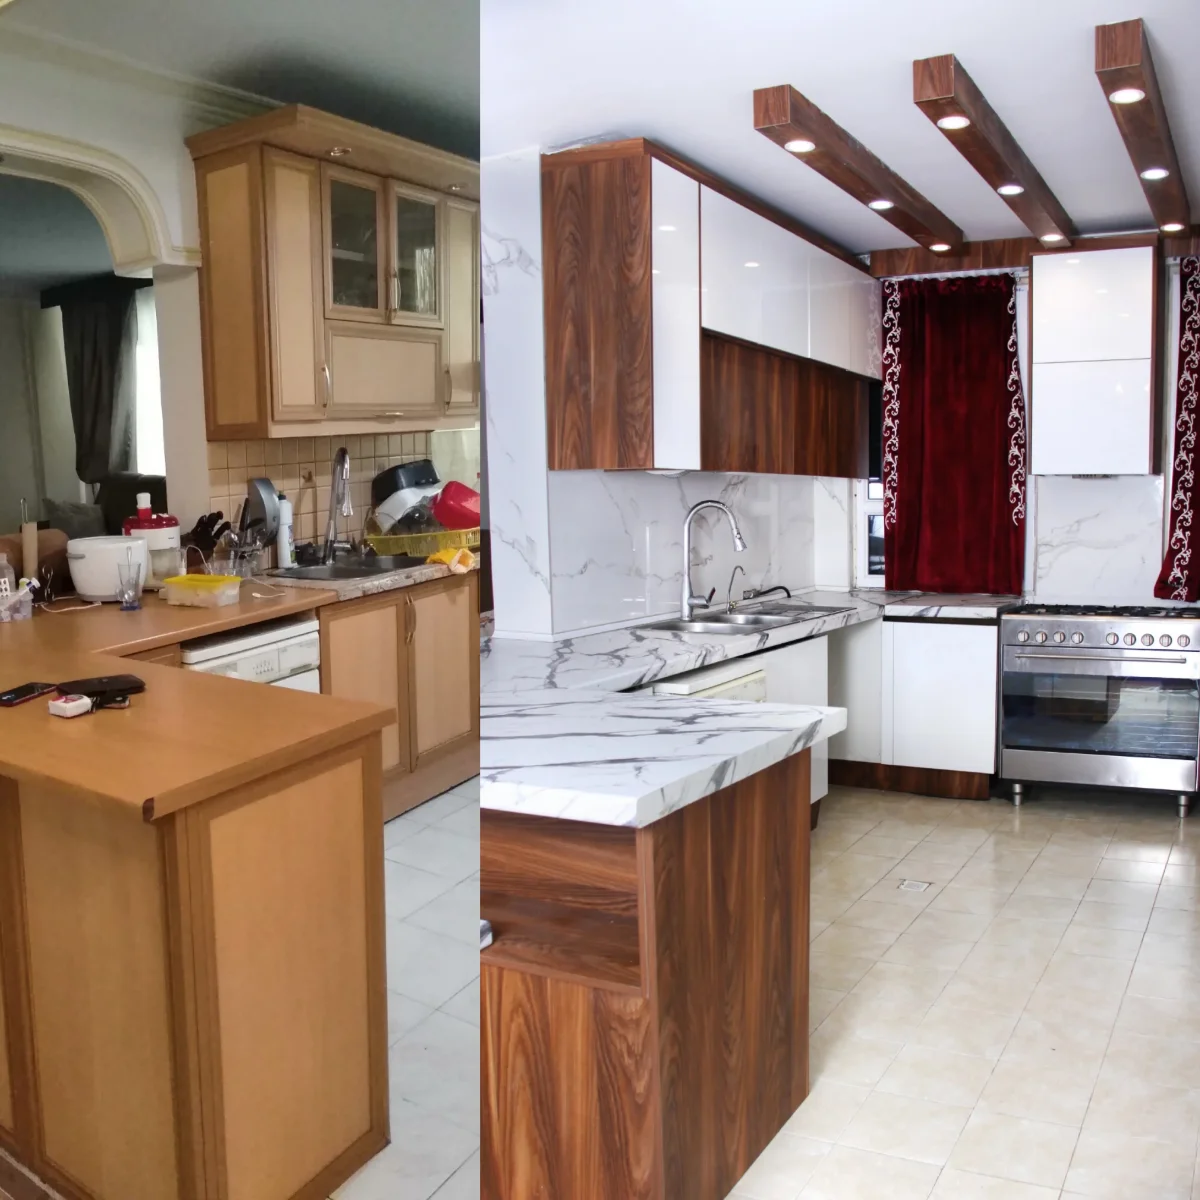 عکس سمت راست کابینت قدیمی و دمده، عکس سمت چپ همان آشپزخانه با کابینت مدرن سفید-چوبی جدید